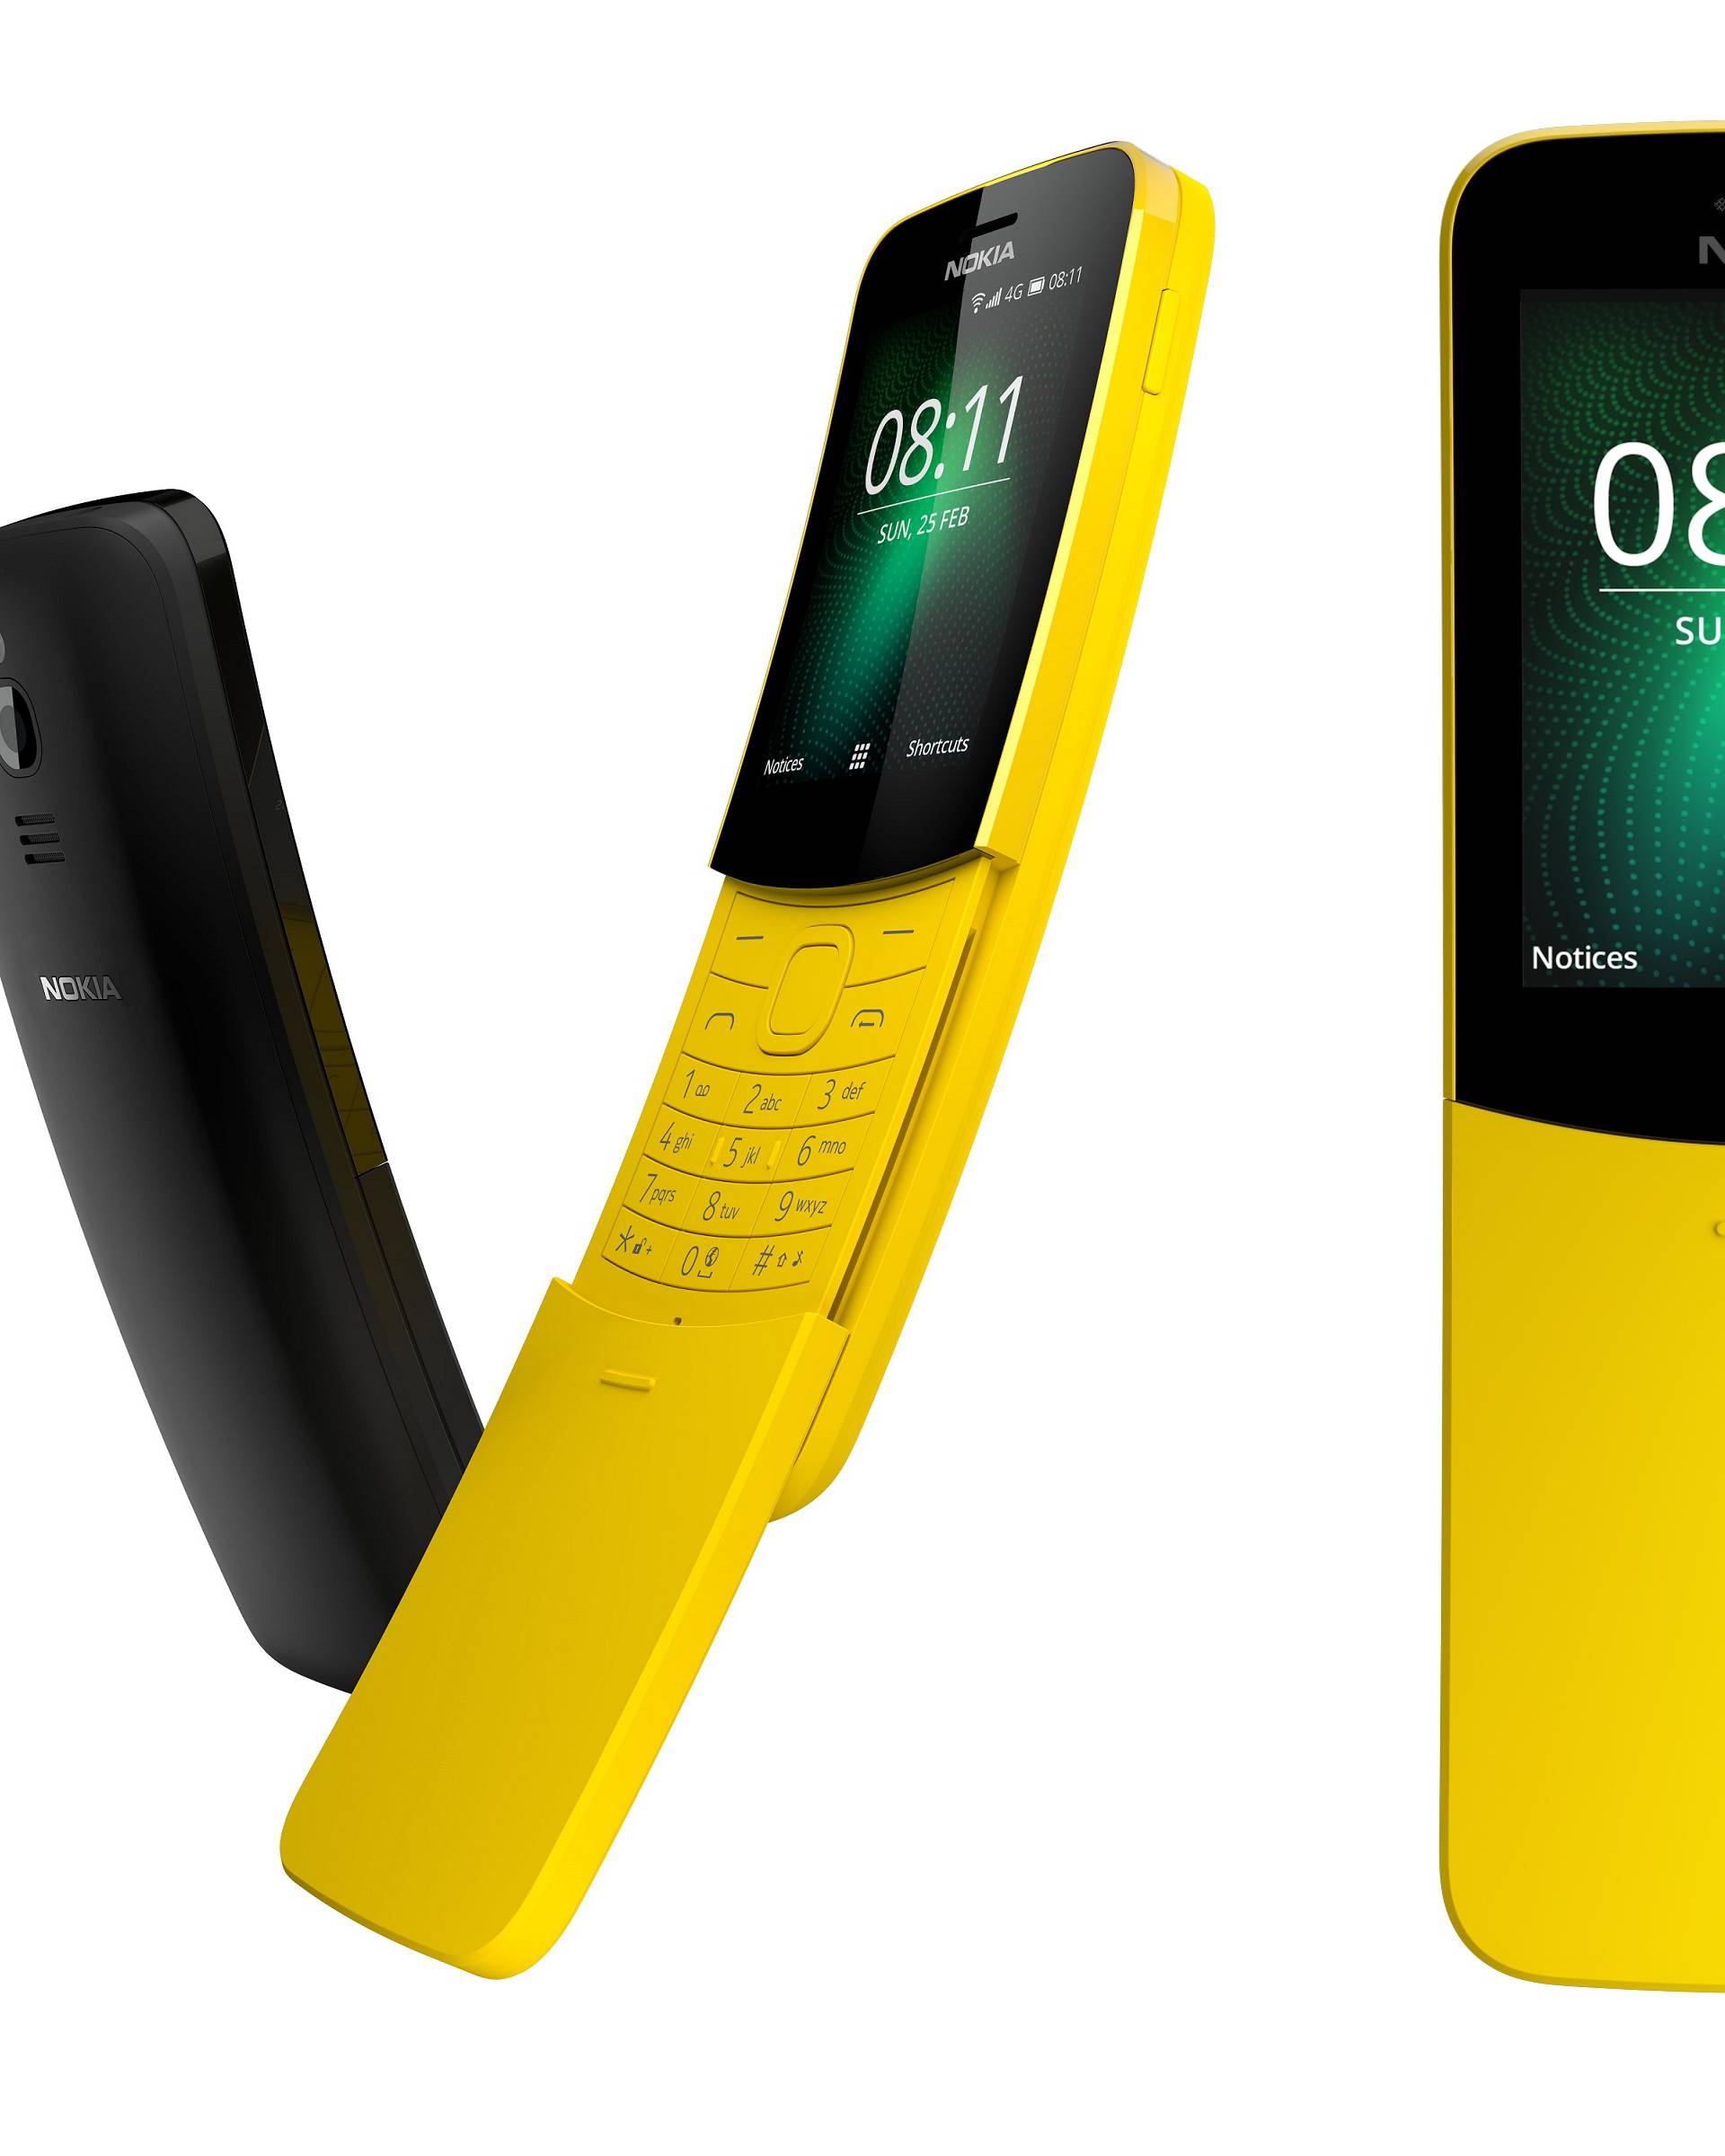 Proslavio ga Matrix: Nokia je oživjela još jedan slavni telefon